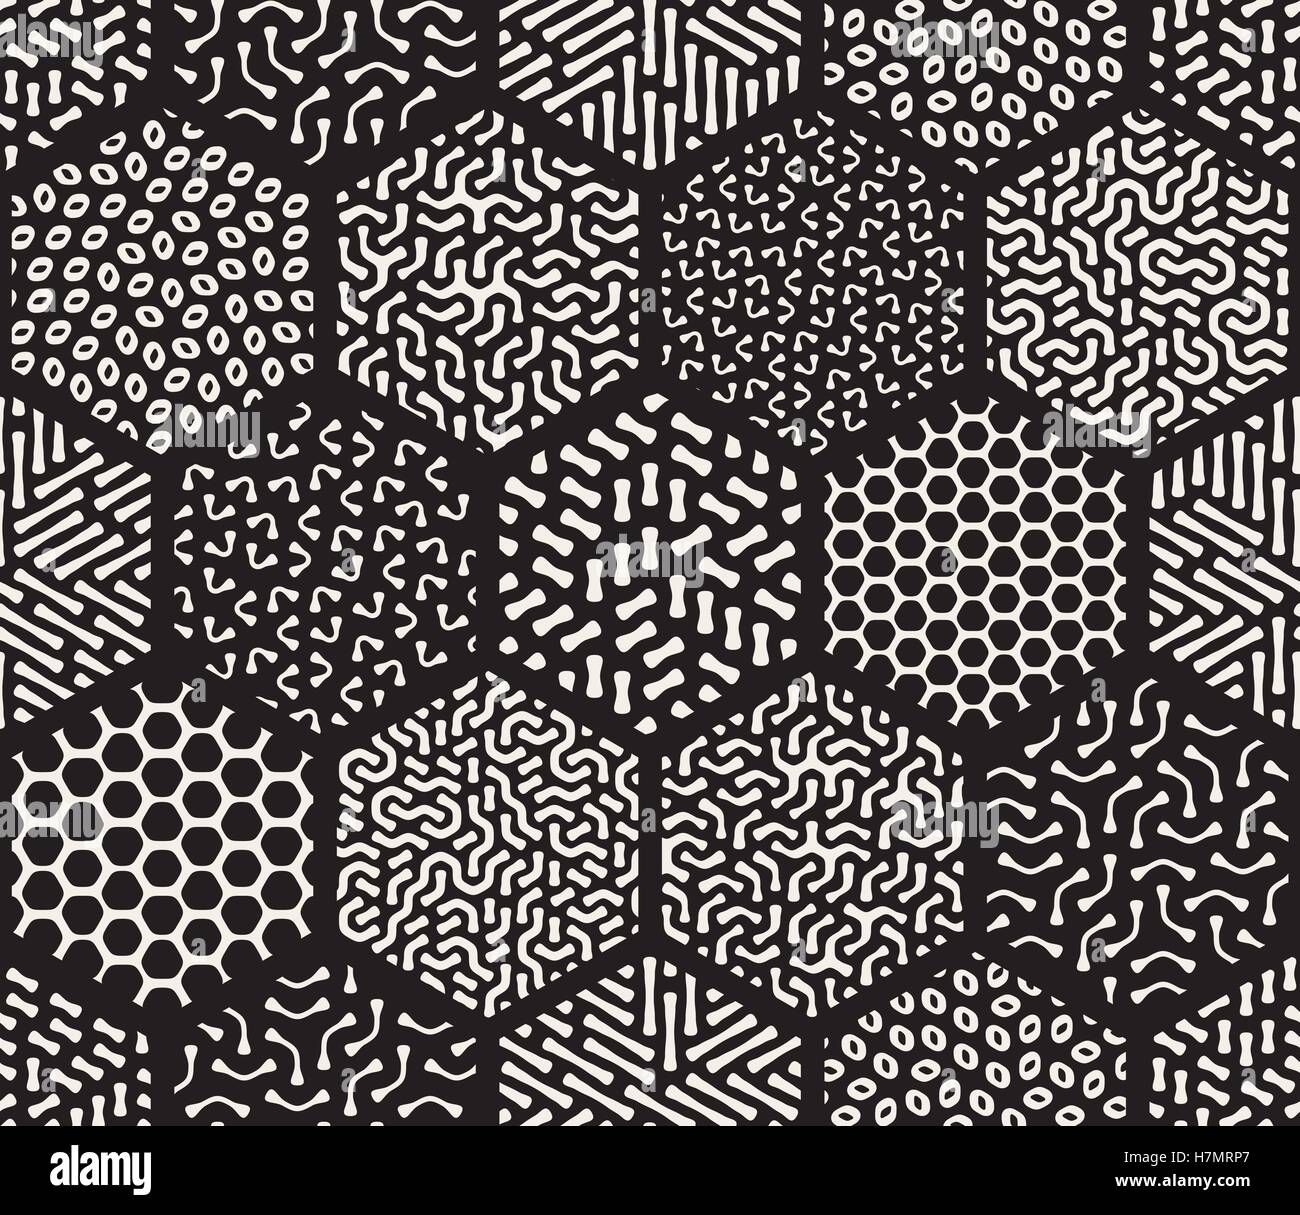 Seamless Vector noir et blanc carrelage mosaïque hexagonale rempli de modèles de pêle-mêle ligne arrondie Abstract Background Illustration de Vecteur